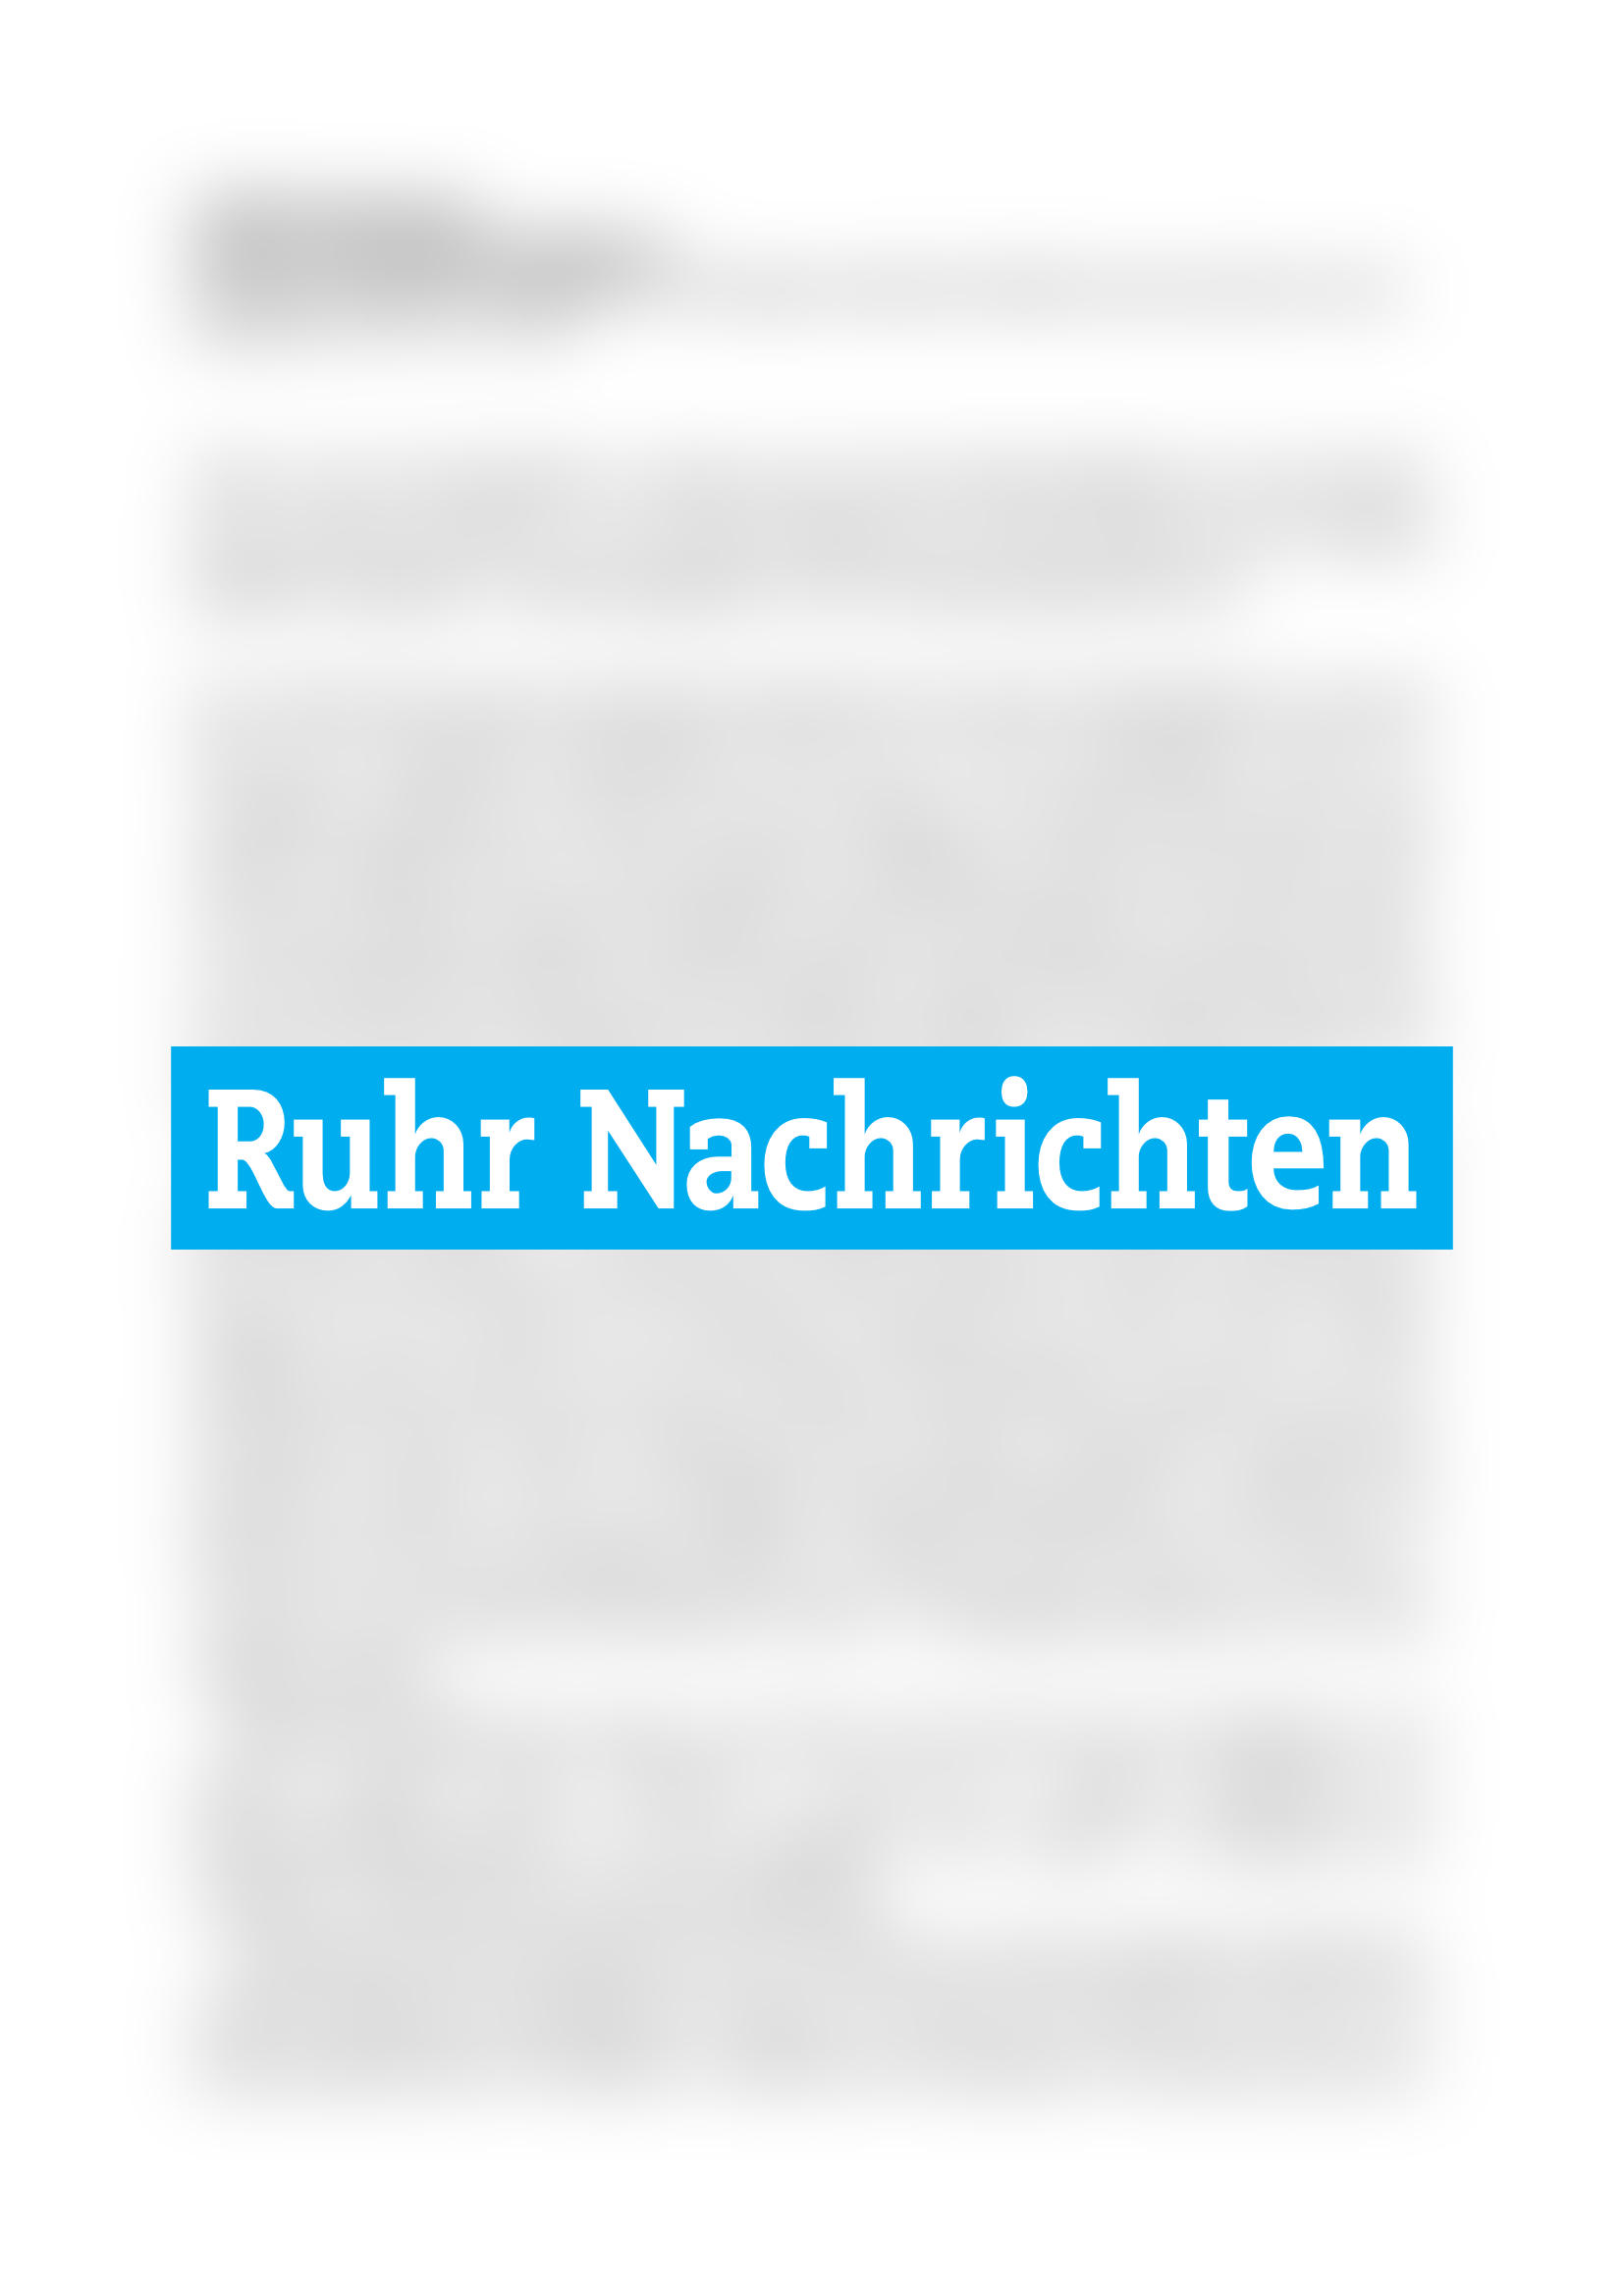 Vorschau - Ruhr Nachrichten